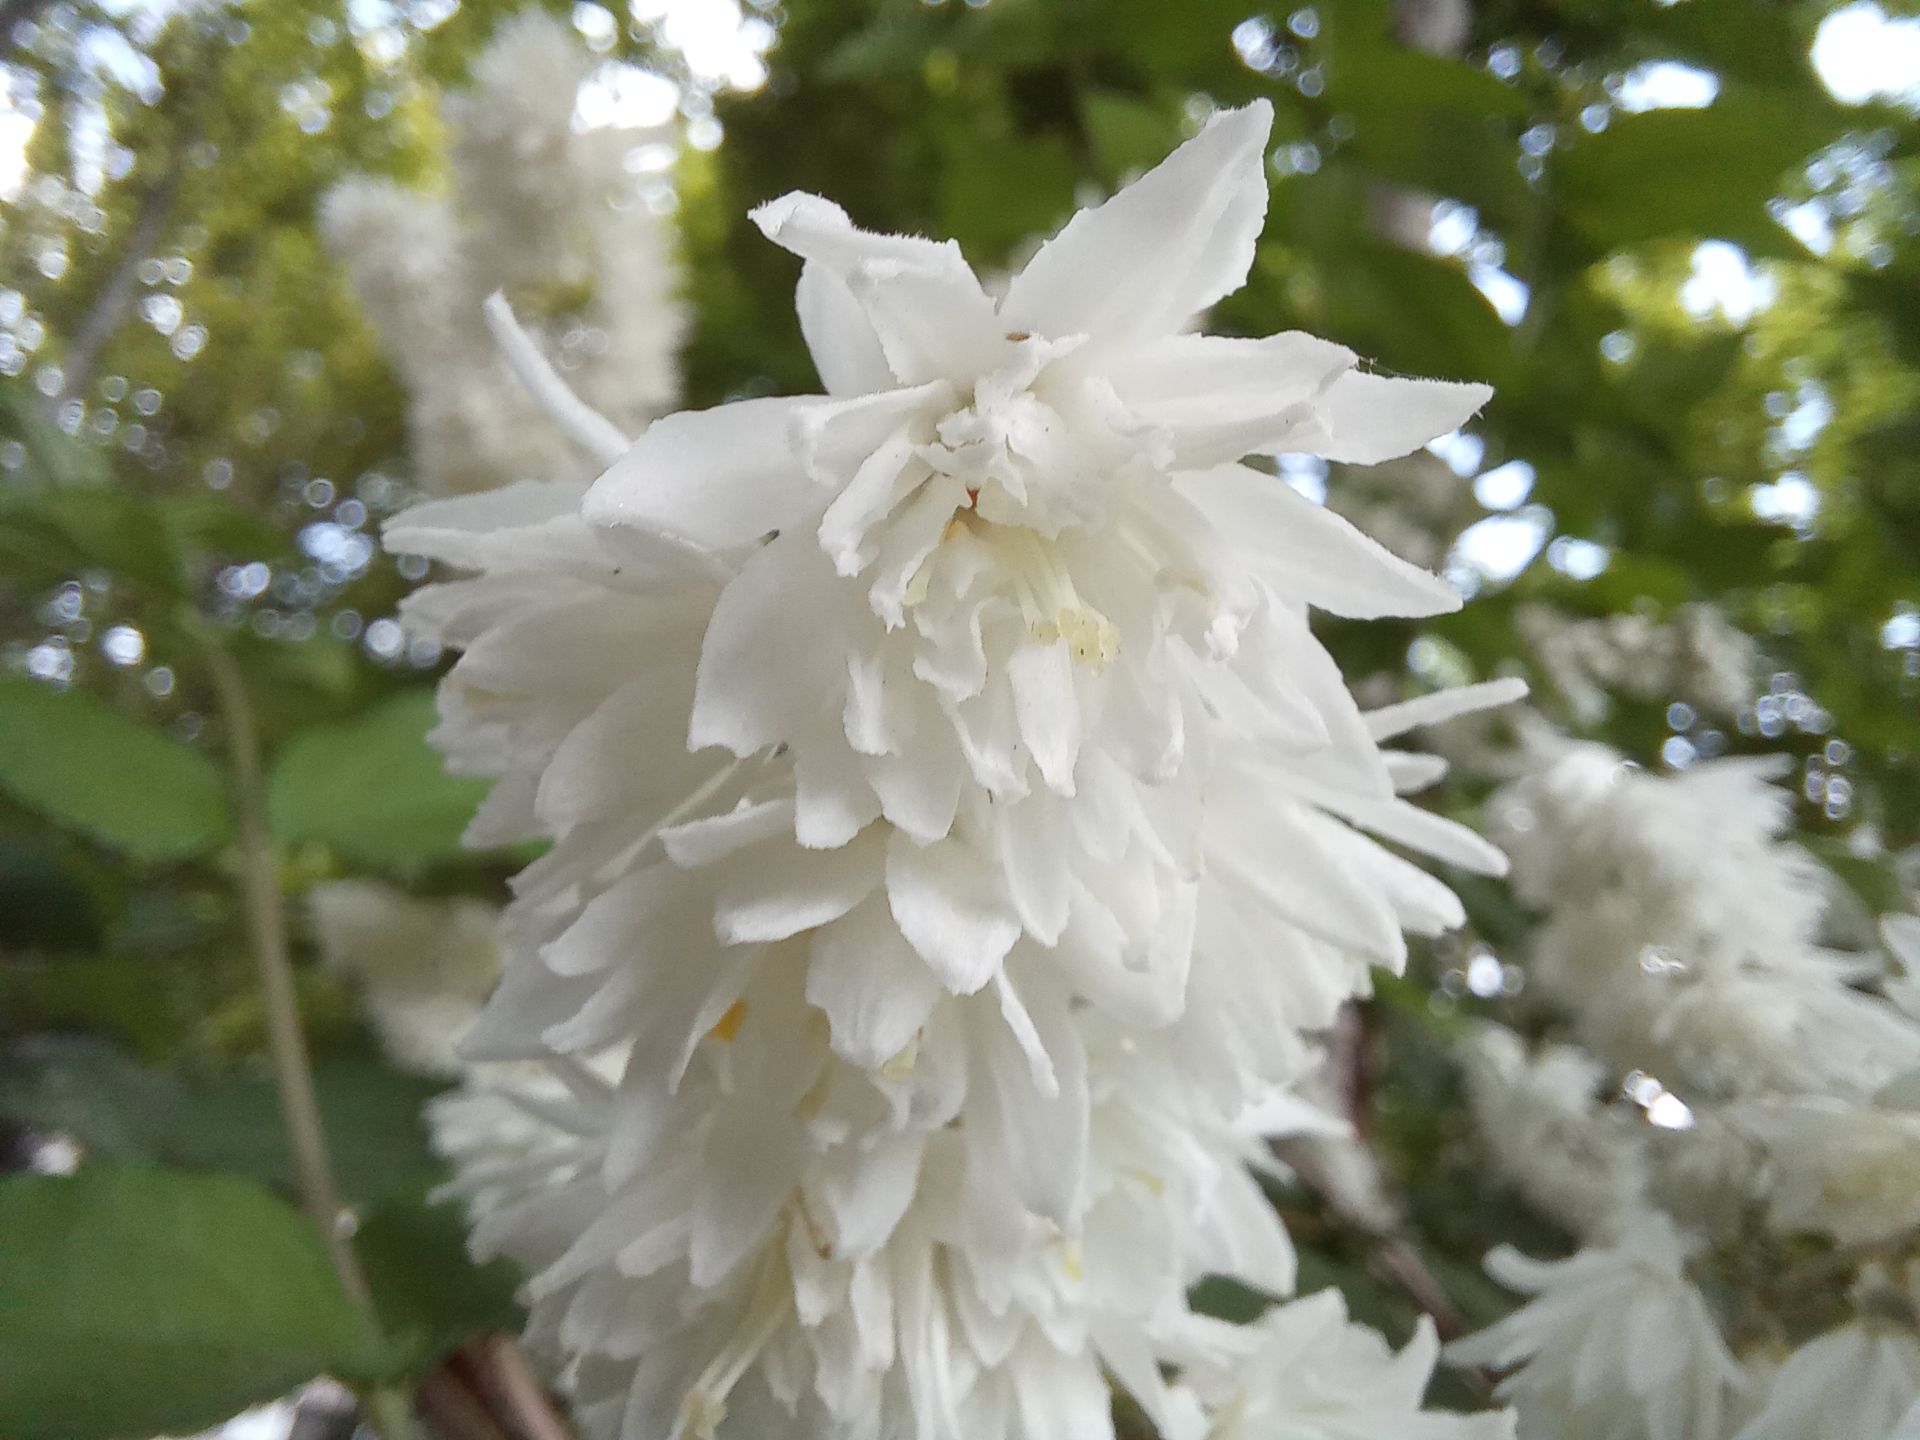 نمونه عکس ثبت شده توسط دوربین ماکرو گلکسی A32 سامسونگ - تصویر یک گل سفید